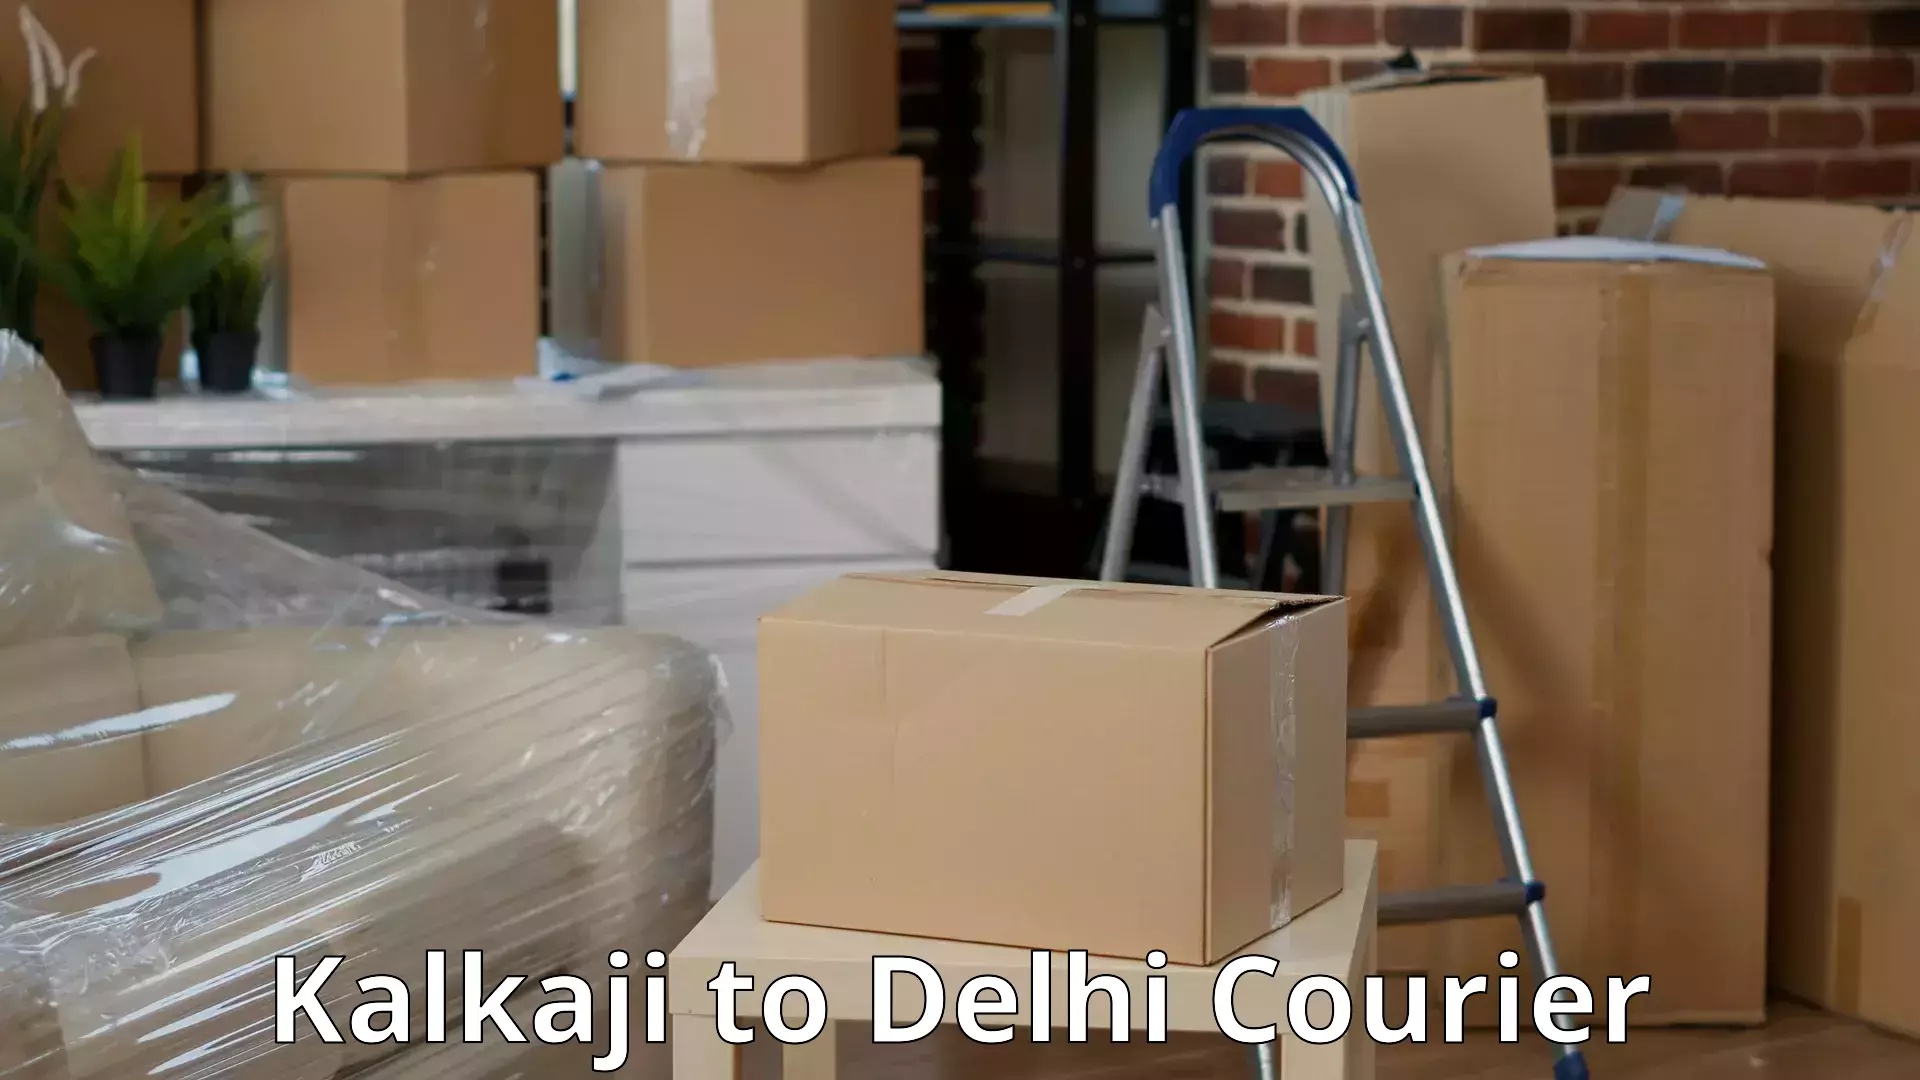 Residential moving experts Kalkaji to Delhi